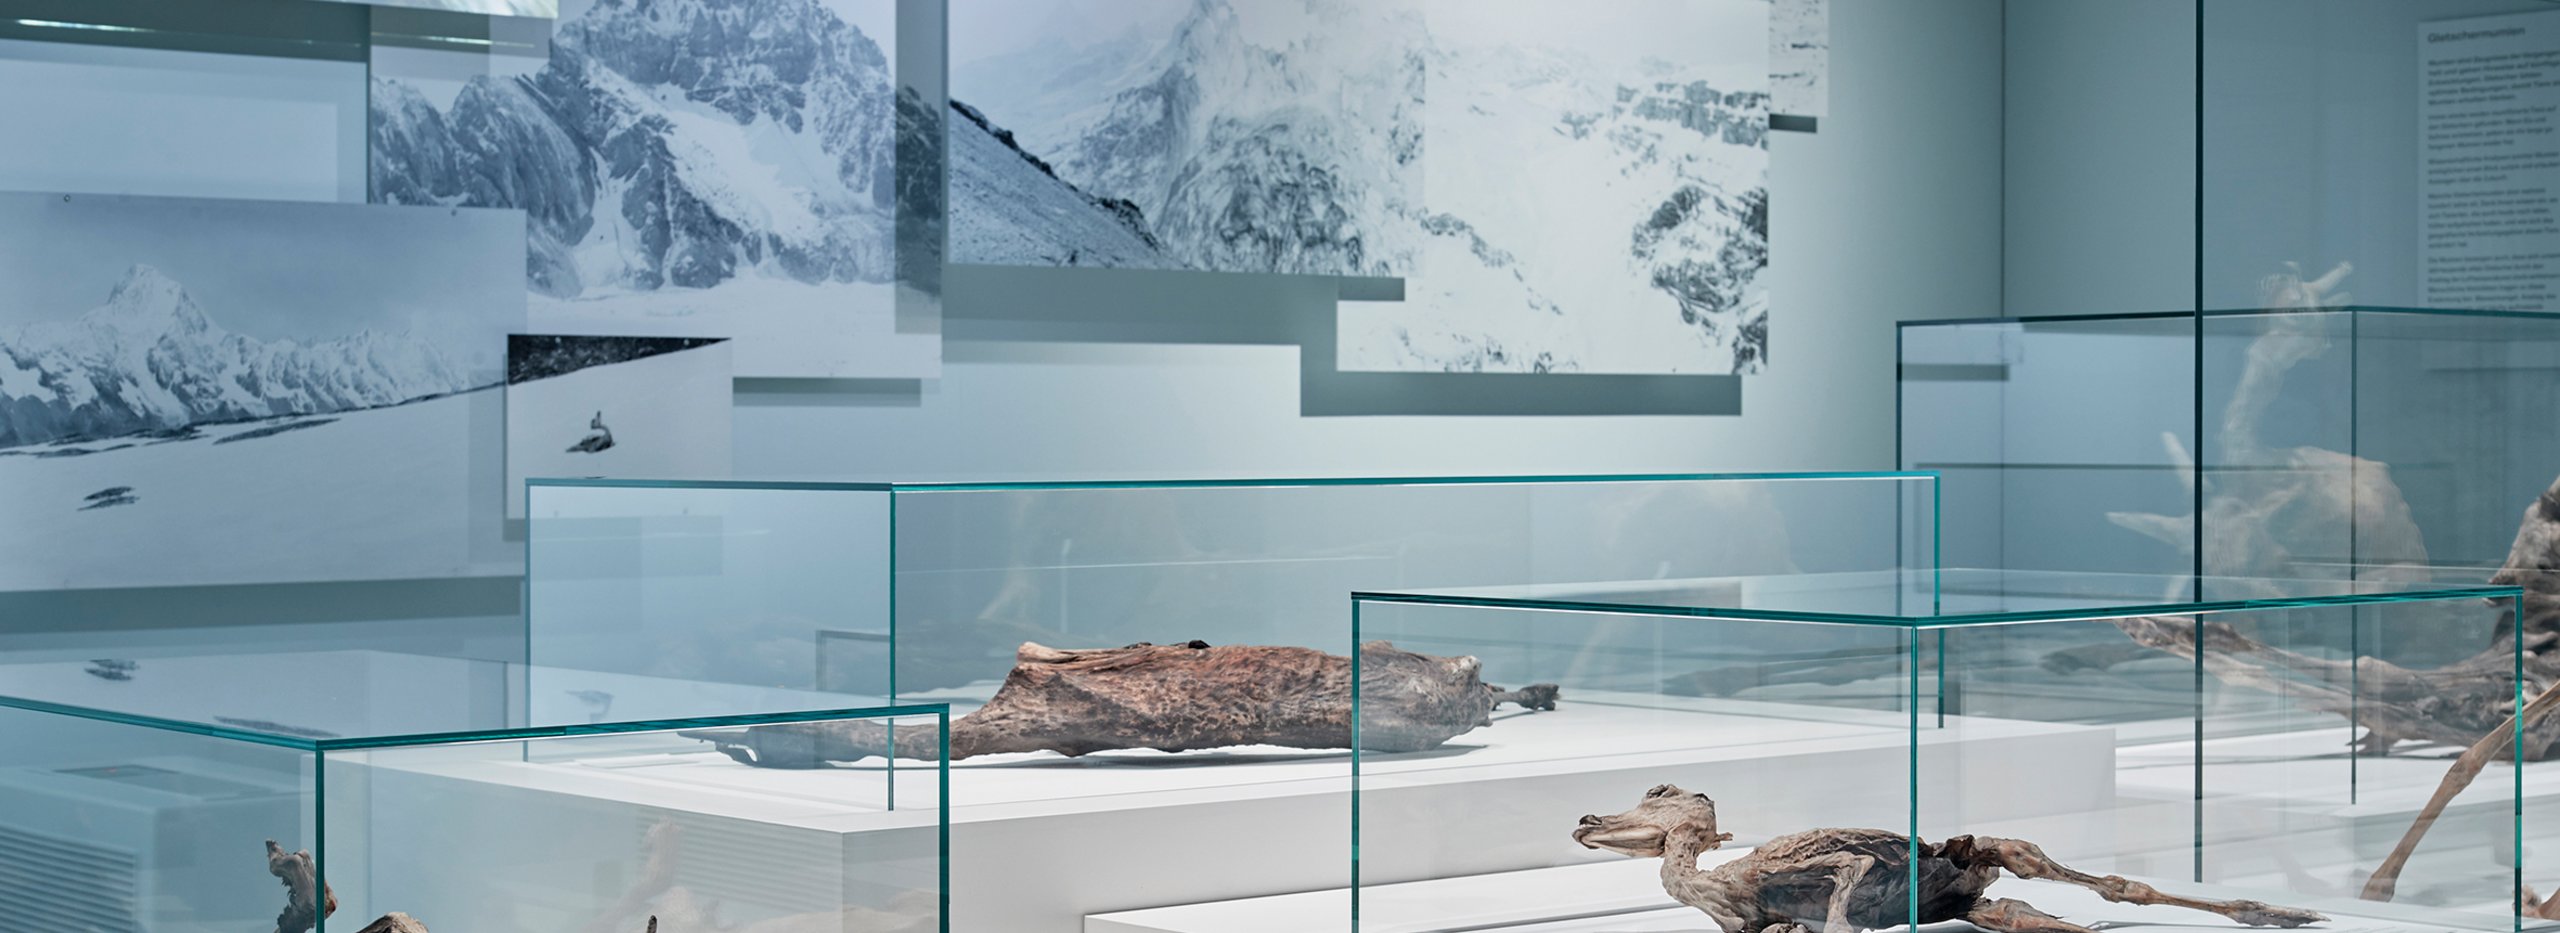 Vitrinen für hochempfindliche Exponate, Mumienausstellung NHM Basel | © Mark Niedermann Photography